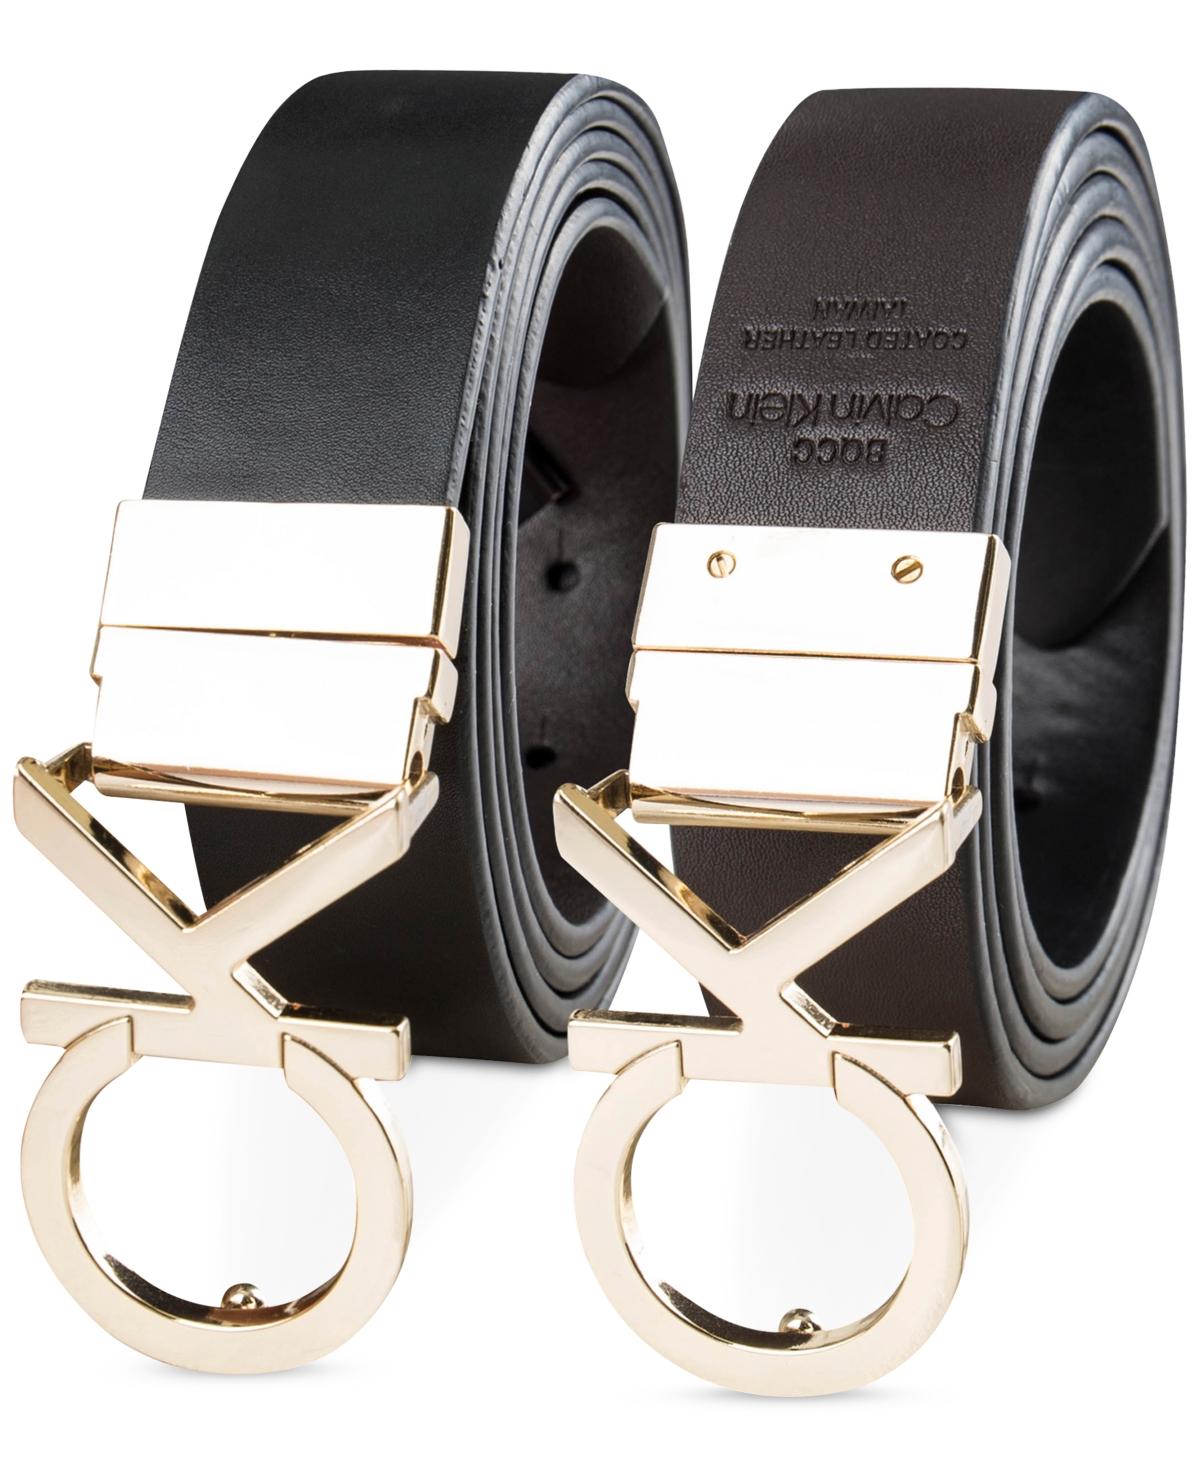 Calvin Klein Men's Monogram Buckle Belt